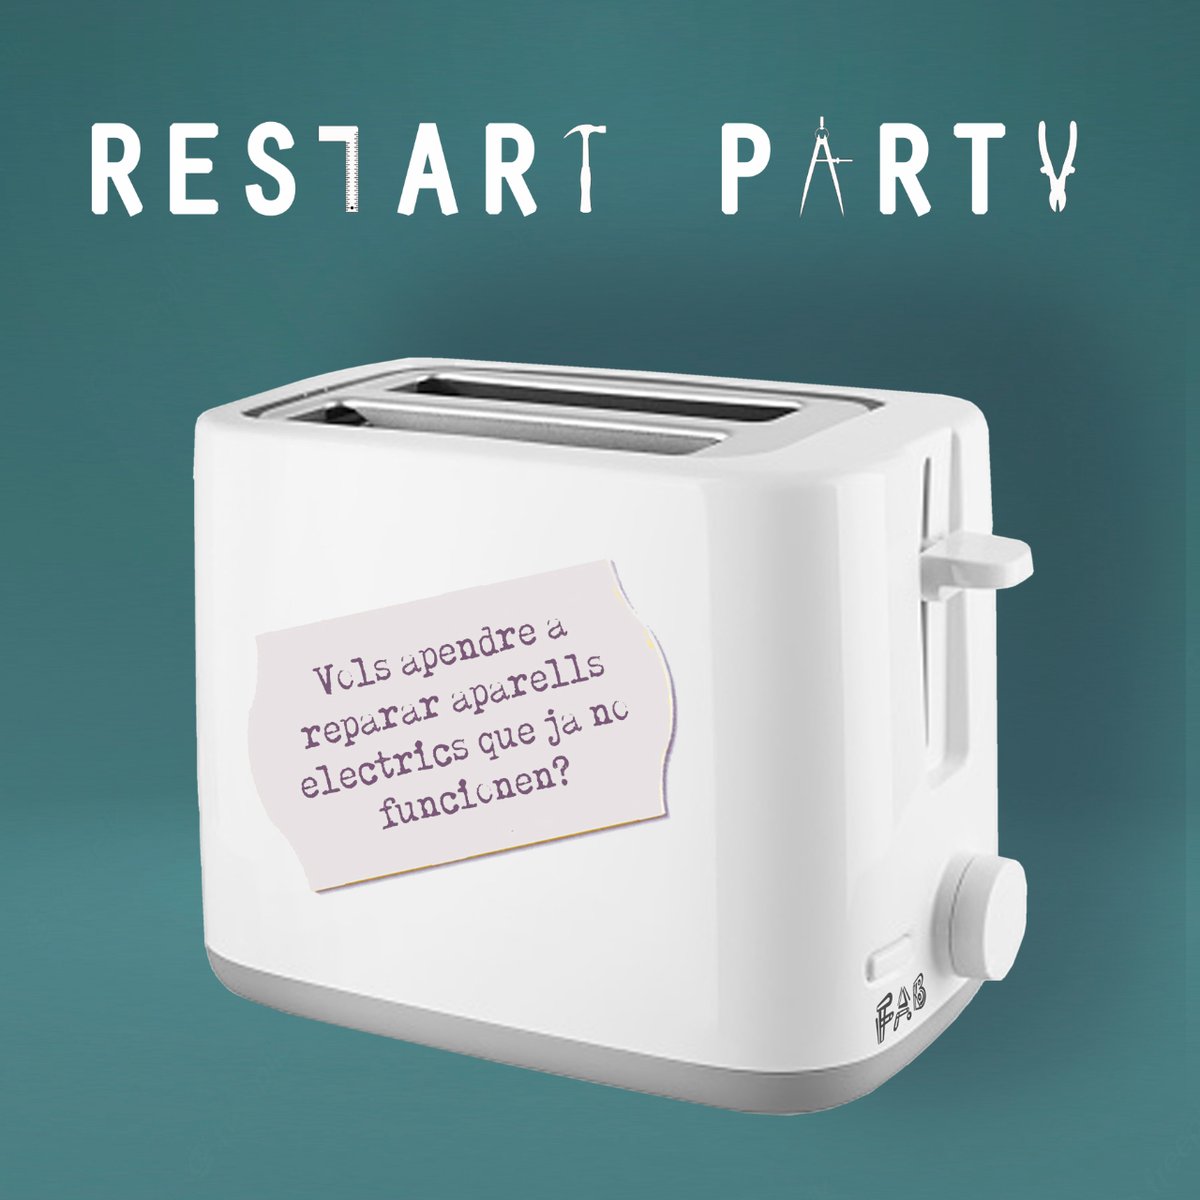 Tens aparells elèctrics que ja no funcionen? Vine el 11 de març a la Restart Party i t'ensenyem a reparar-los! Més info a: bit.ly/3S1WC7D